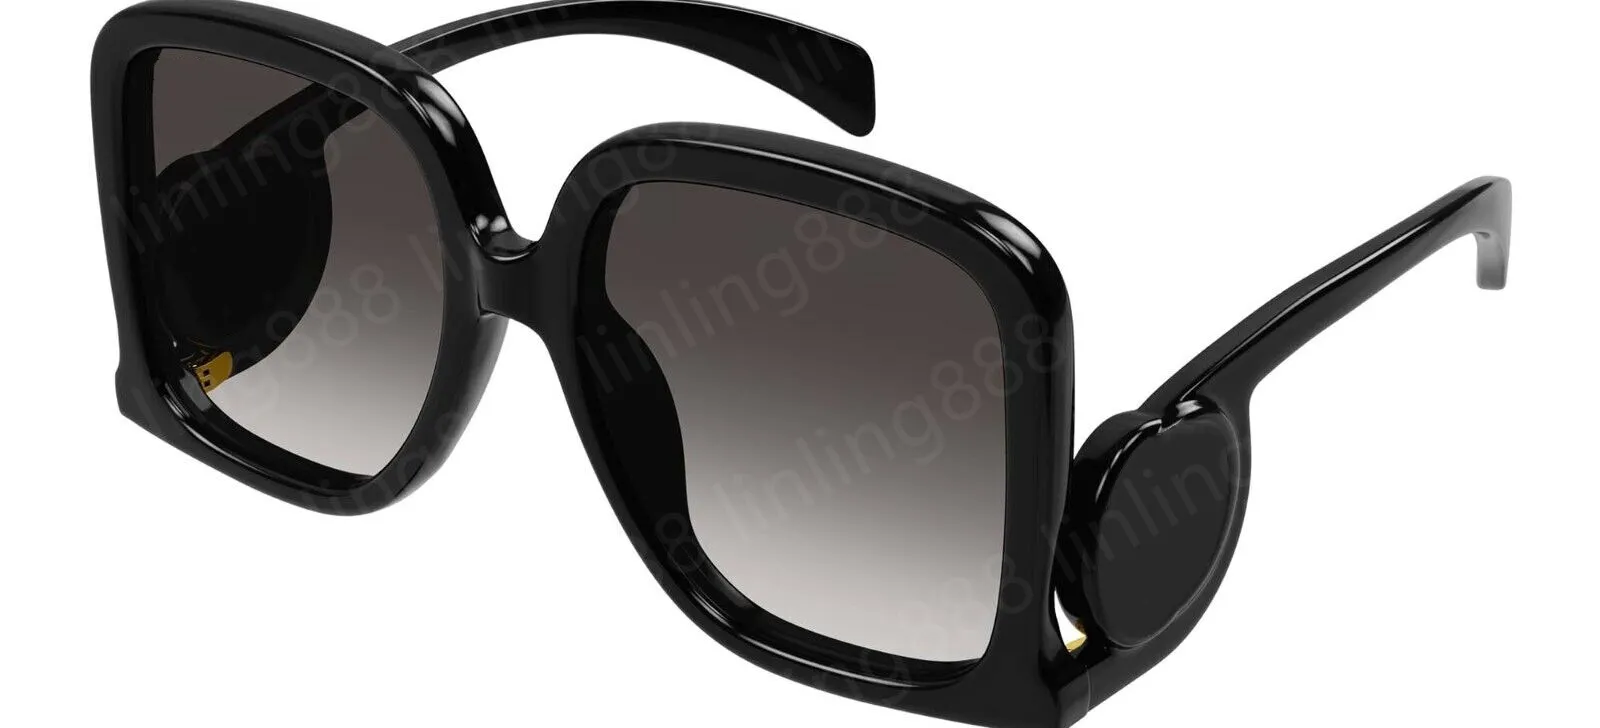 A112 1326 S 디자이너 모델 남성 및 여성의 동일한 스타일 선글라스 상자 UV 보호 디자이너 남성 여성 선글라와 같은 고품질 선글라스